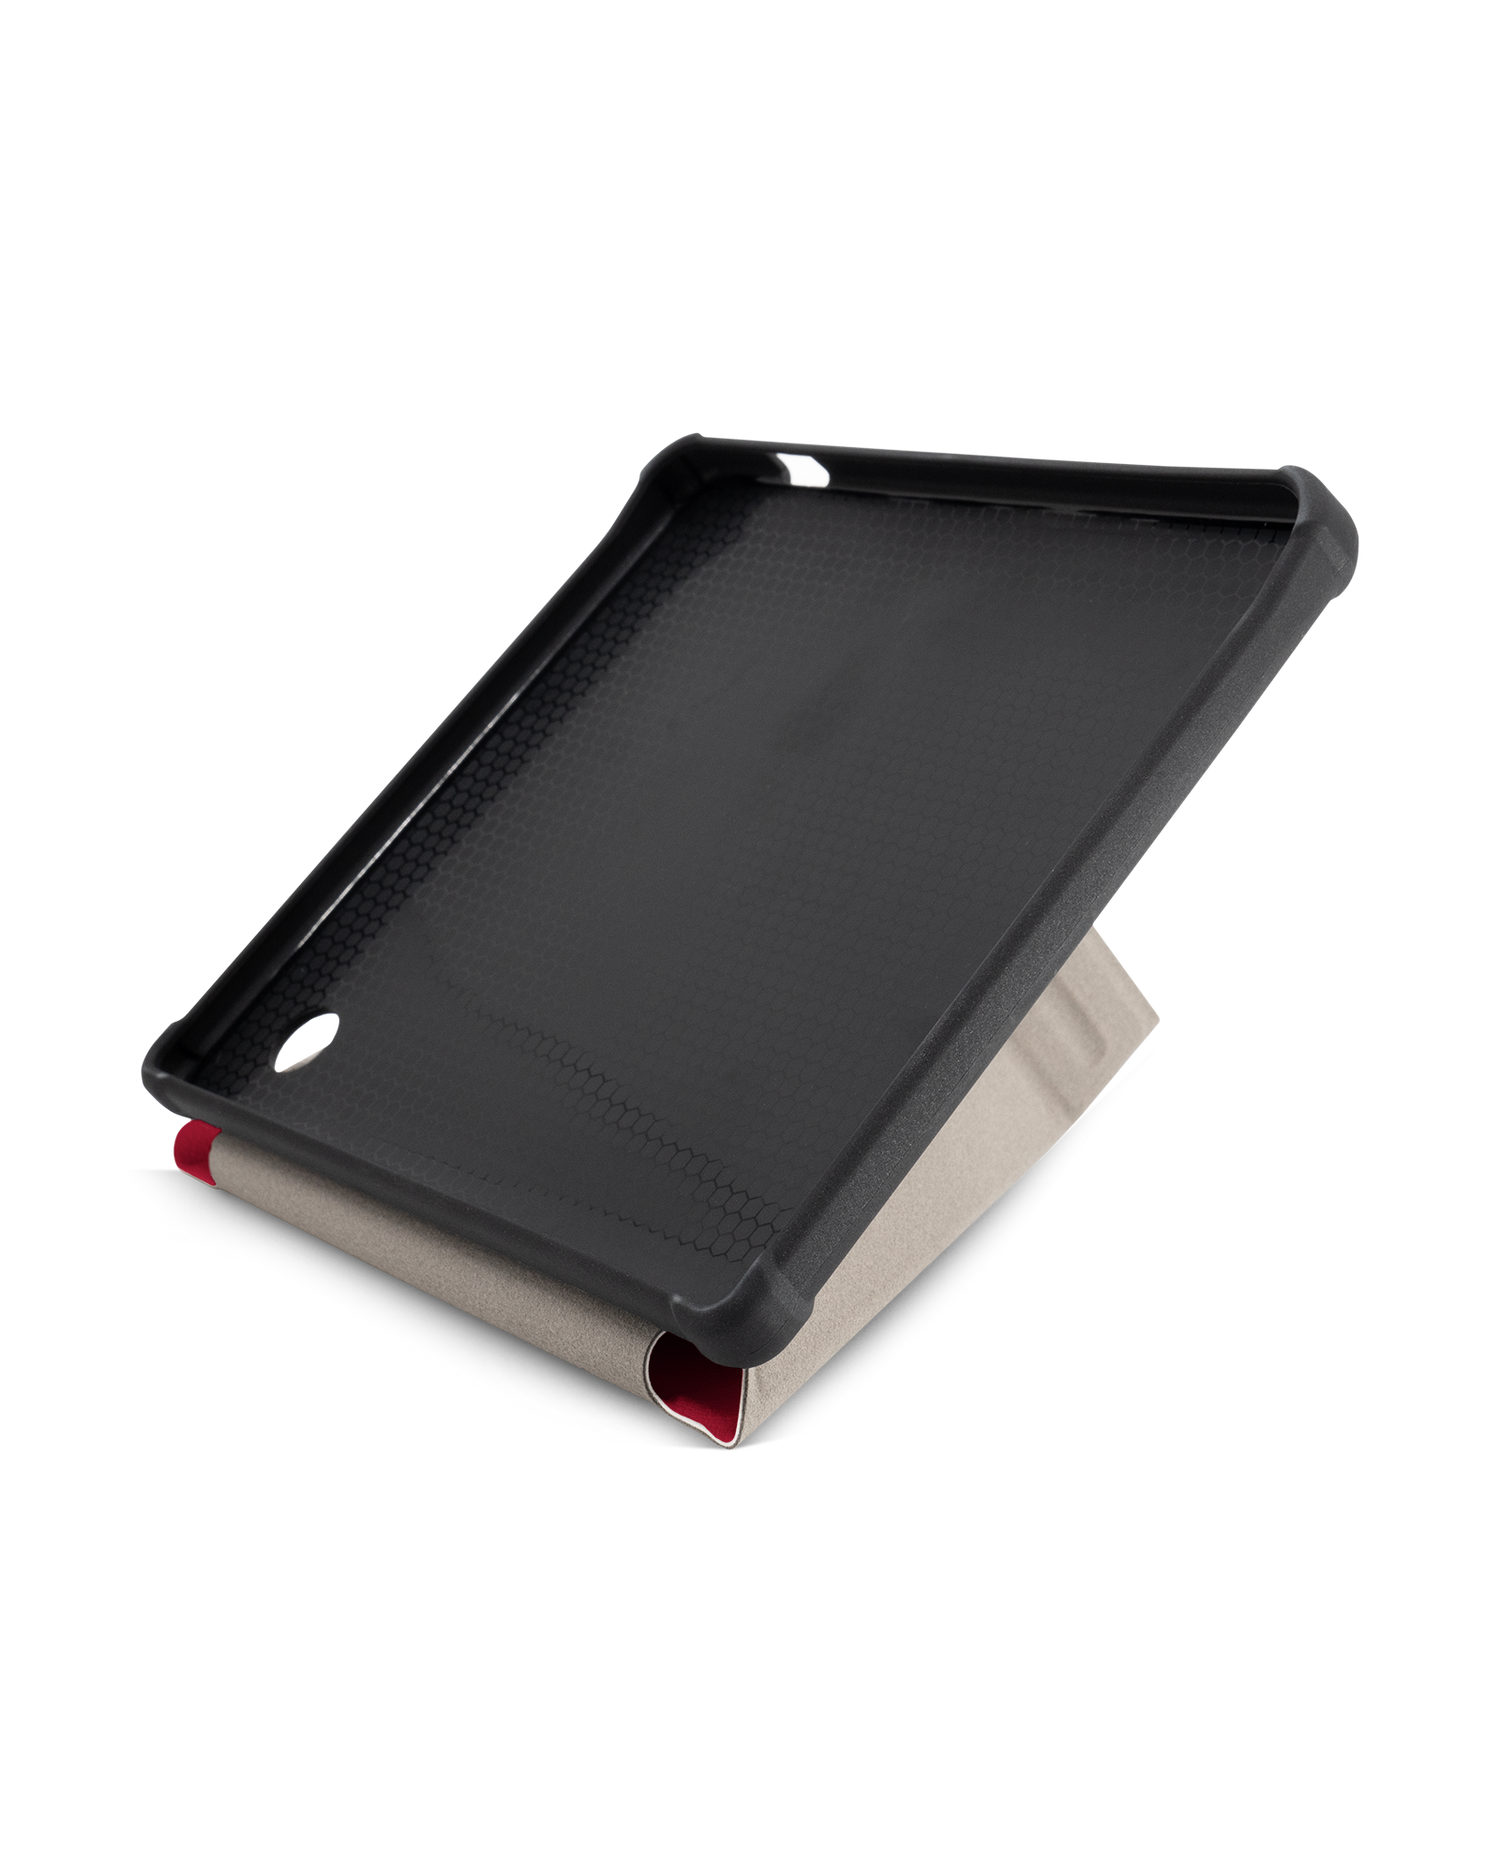 RED eBook-Reader Smart Case für tolino vision 5 (2019): Aufgestellt im Querformat Innenansicht